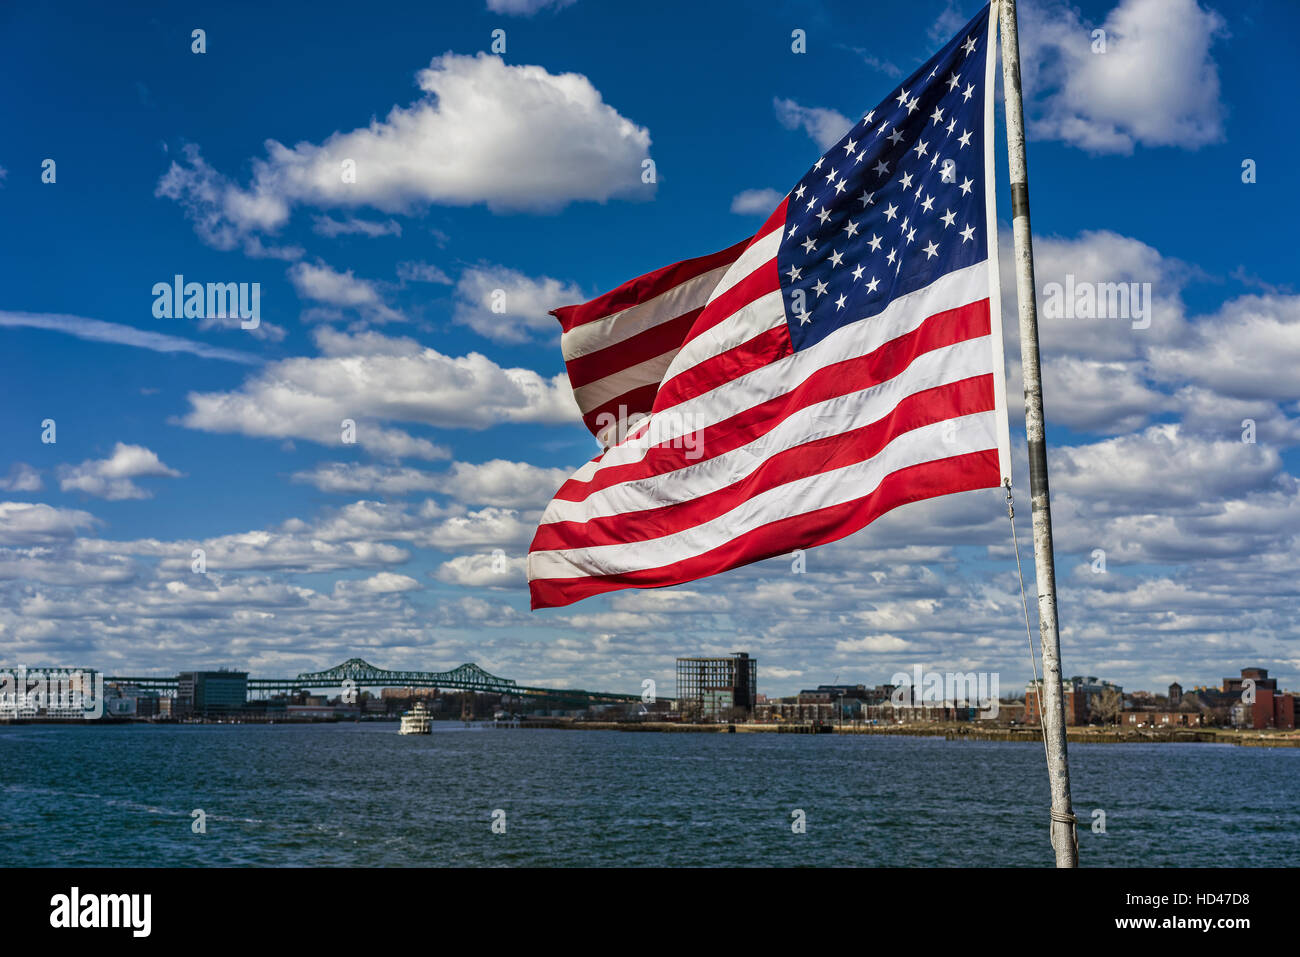 Skyline der Stadt und der Flagge der Vereinigten Staaten von Amerika in Boston, USA. Es ist eines der wichtigsten Symbole des Landes und besteht aus 13 horizontalen Streifen Stockfoto